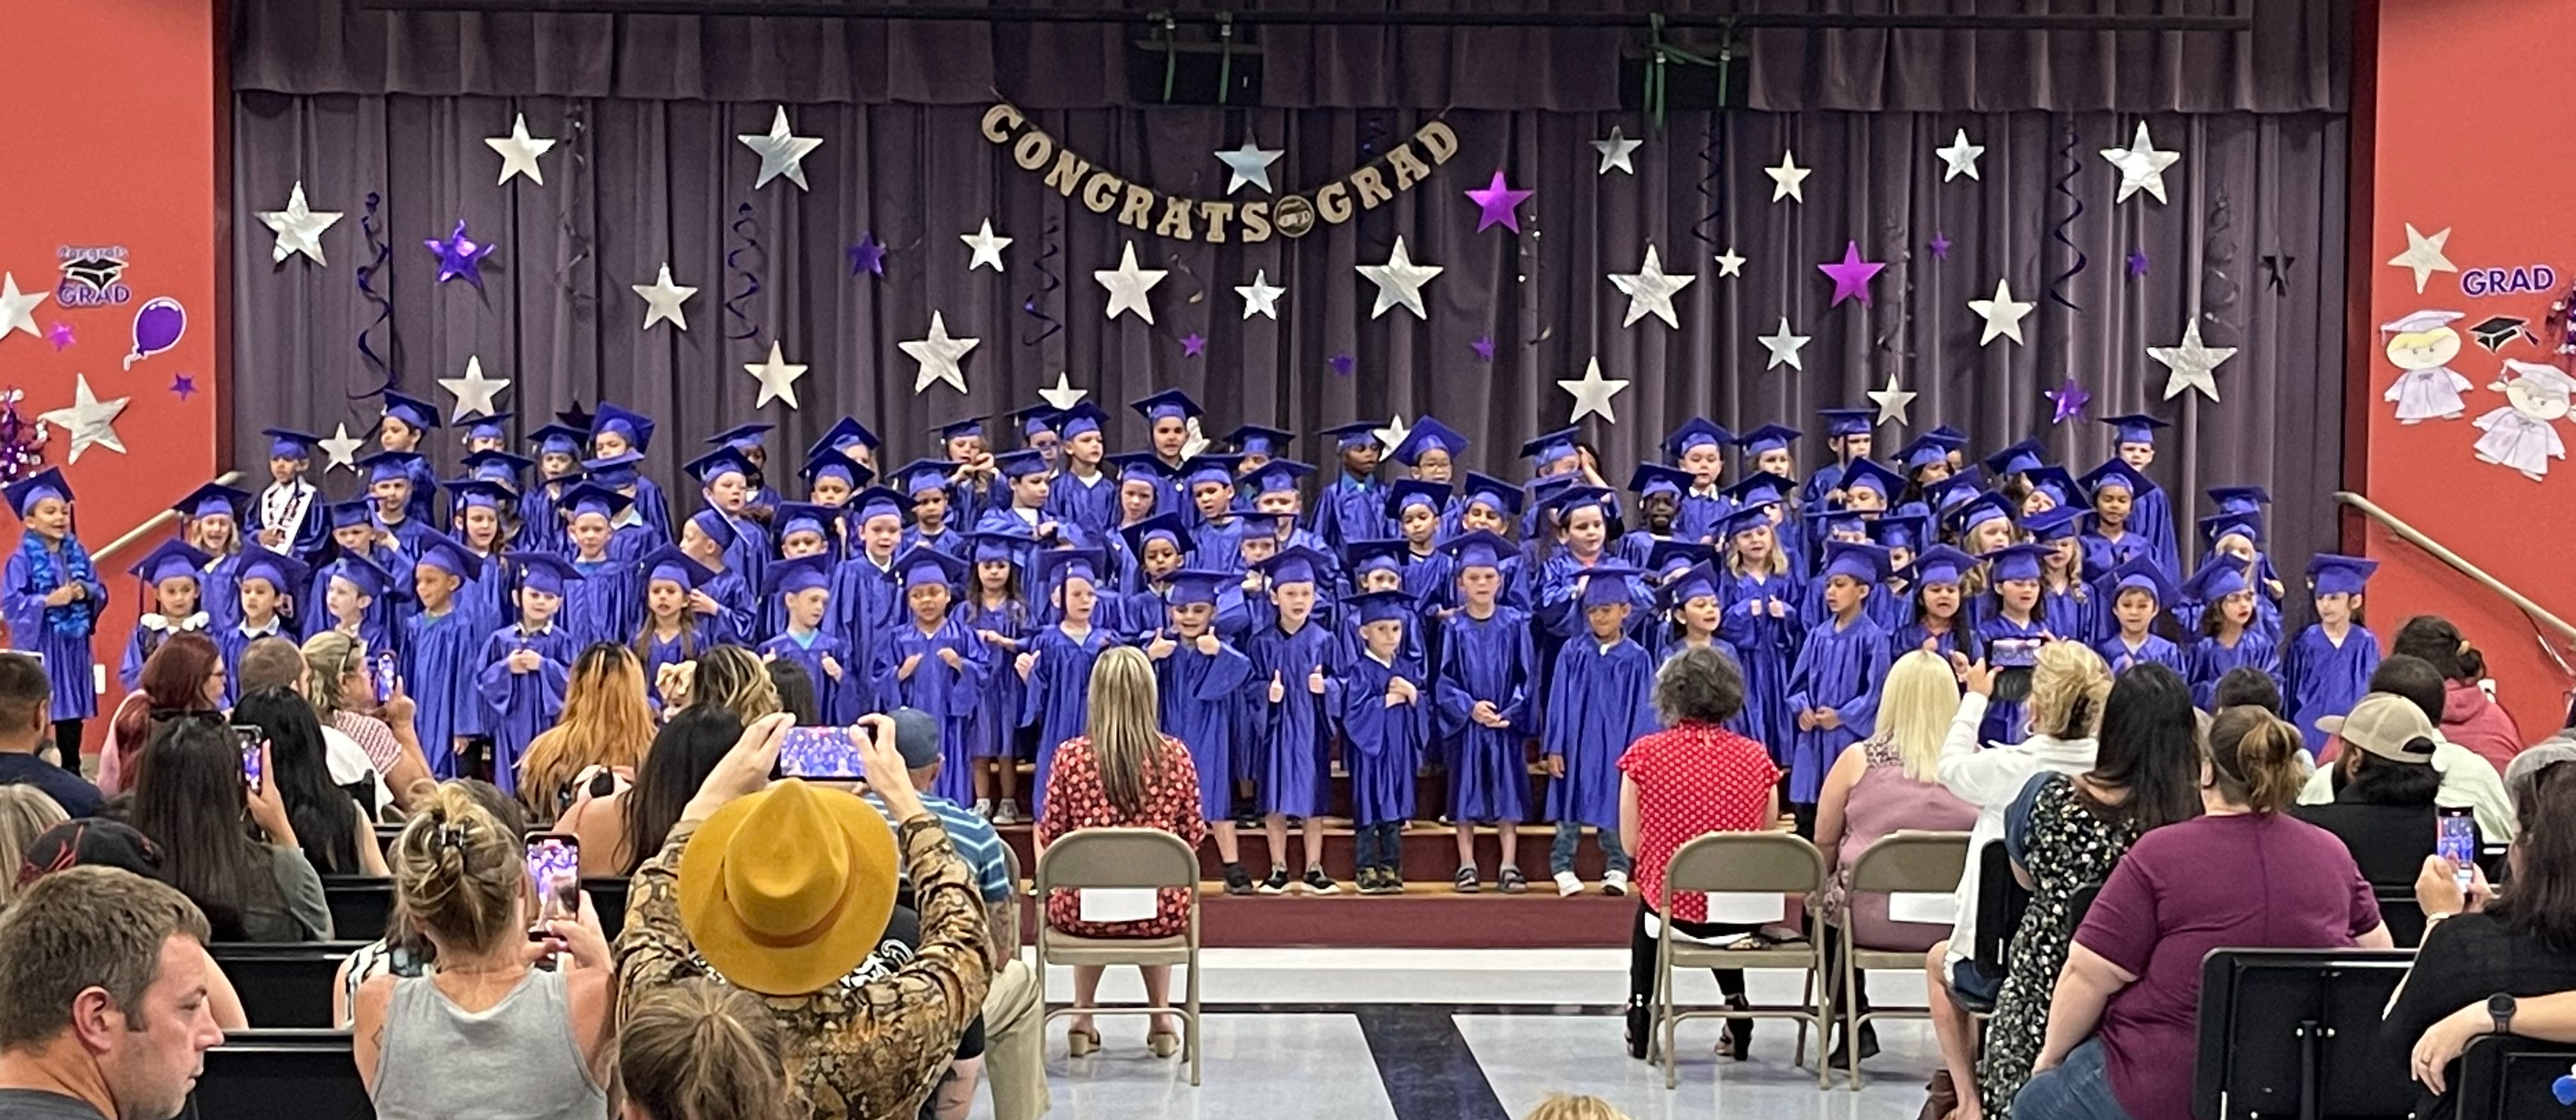 Class of 2035 - Kindergarten Graduation